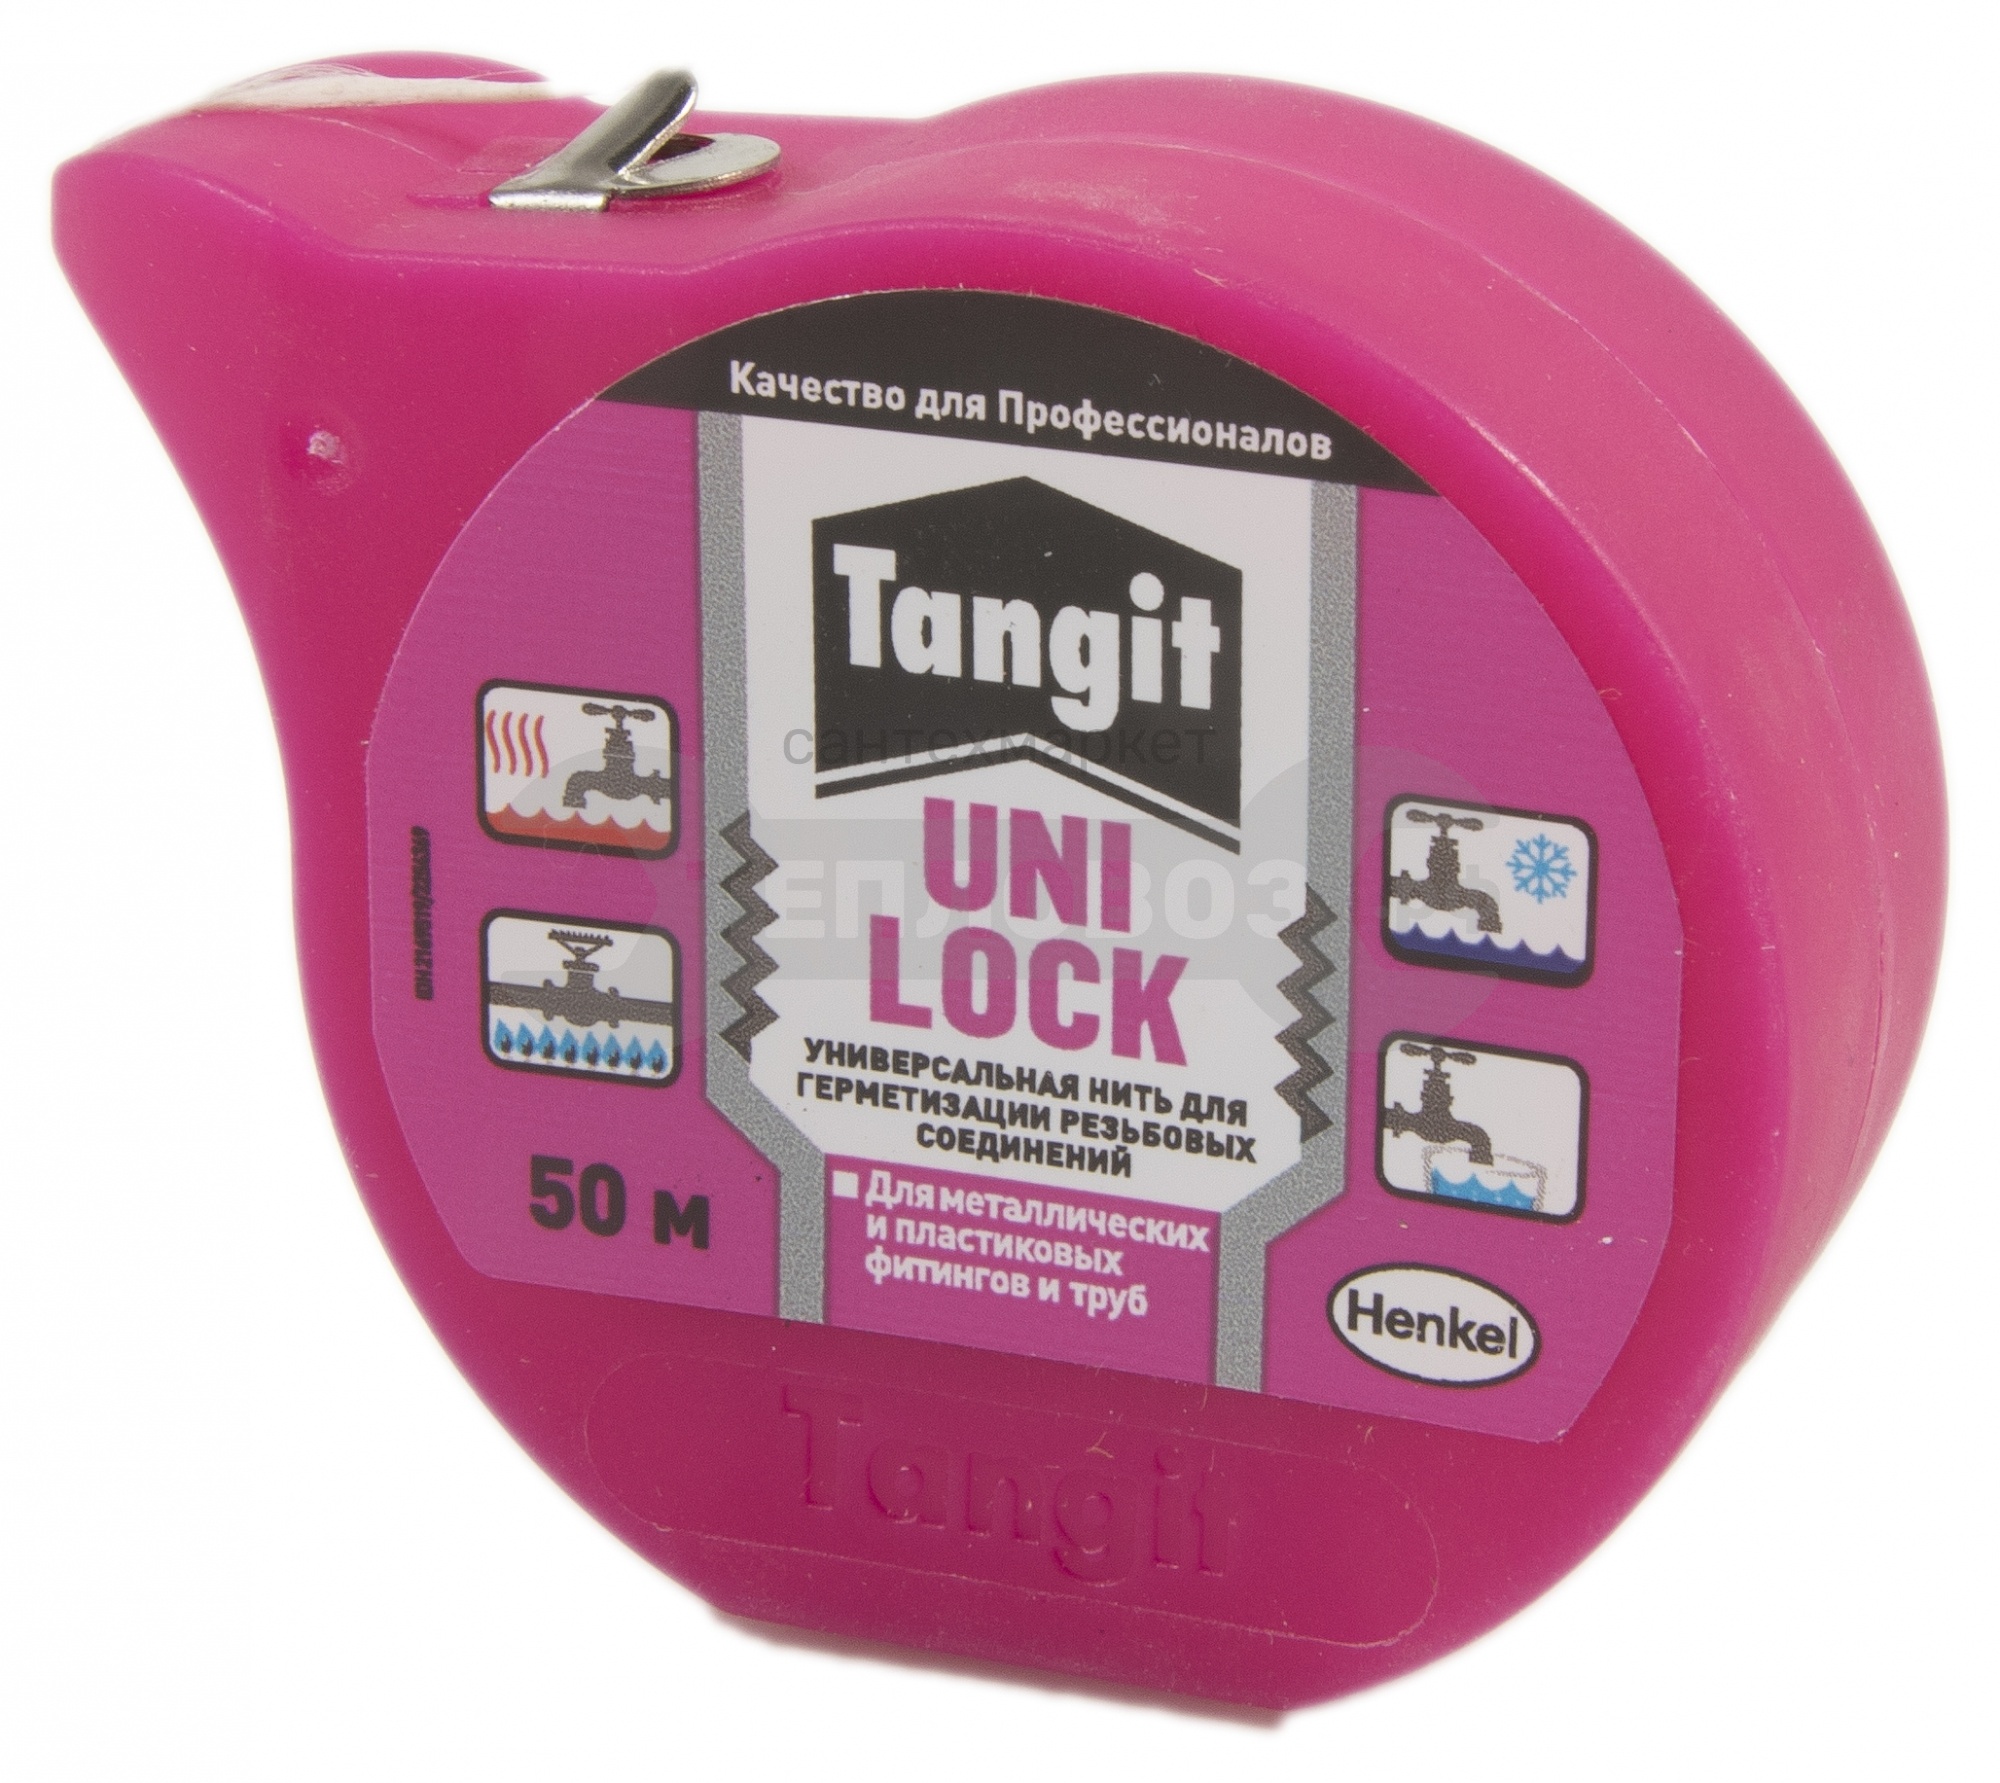 Купить Henkel Tangit UNI-Lock, 50 м в интернет-магазине Тепловоз